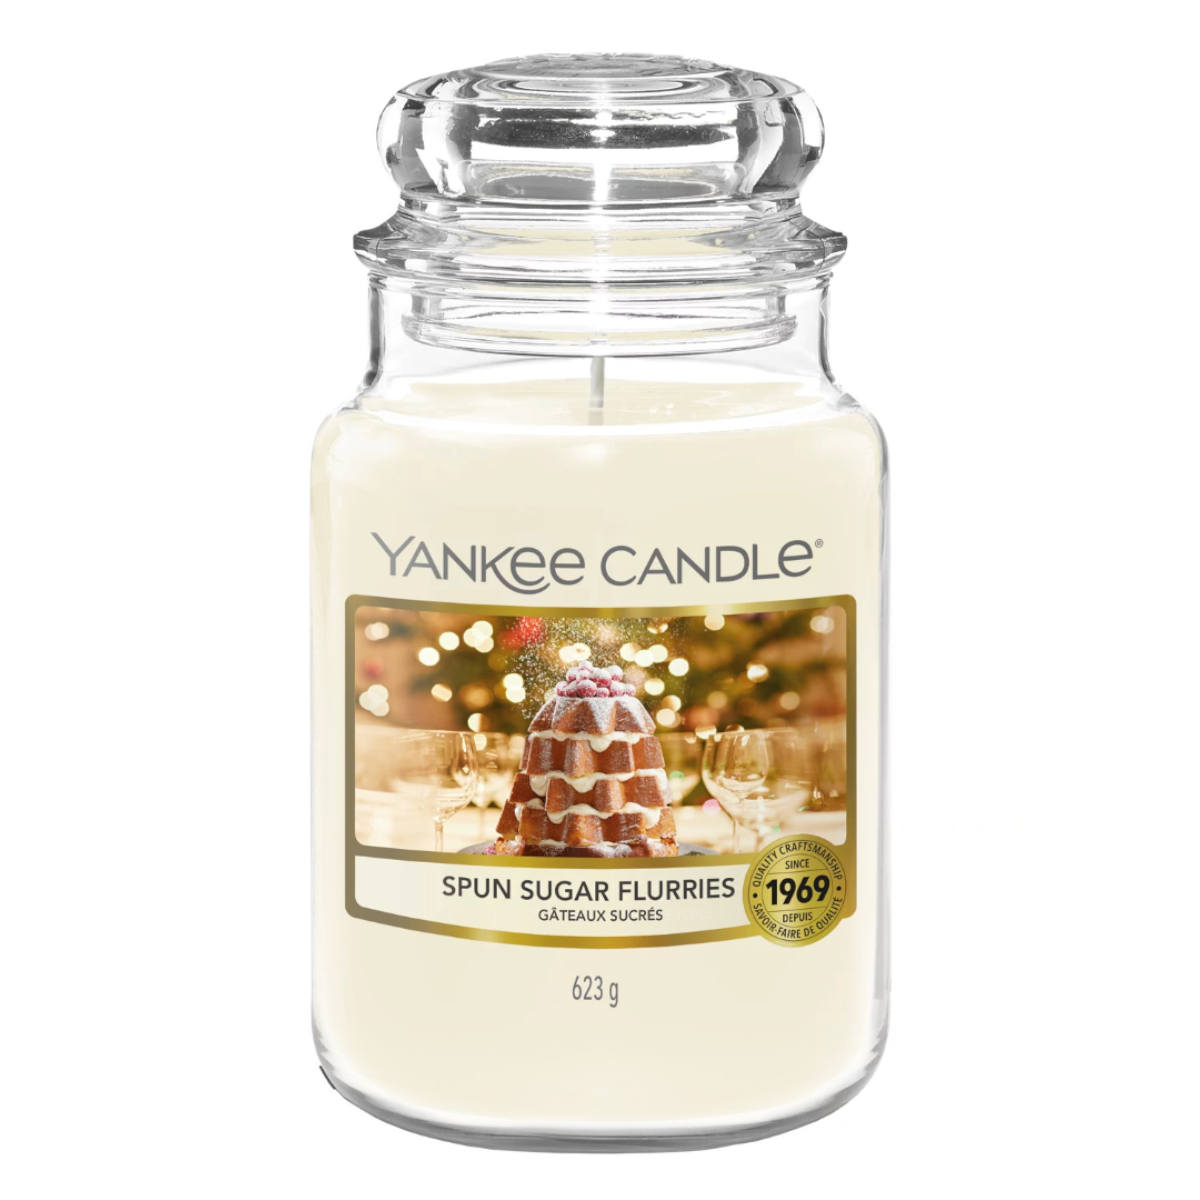 von - Duftkerze Yankee Candle Spun 623g Sugar Flurries